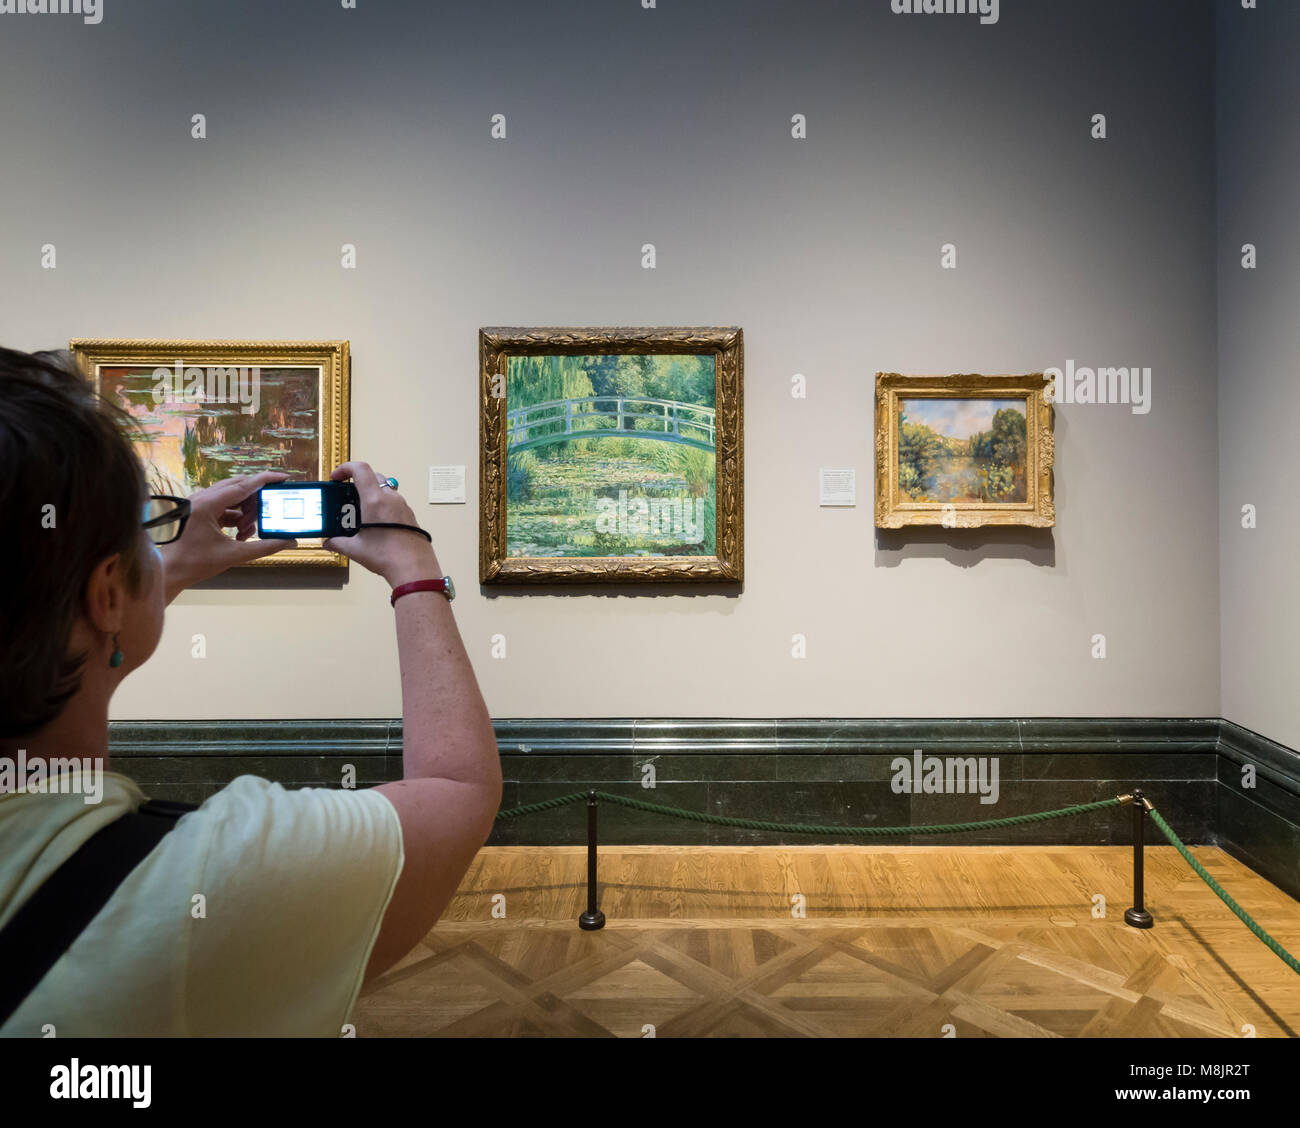 Londres, UK - 1 Sep 2017 : Un visiteur de la National Gallery de Londres est à l'aide de son smartphone pour prendre des photos de Claude Monet' célèbre peinture à l'Huile "Le Bassin aux nymphéas". Banque D'Images